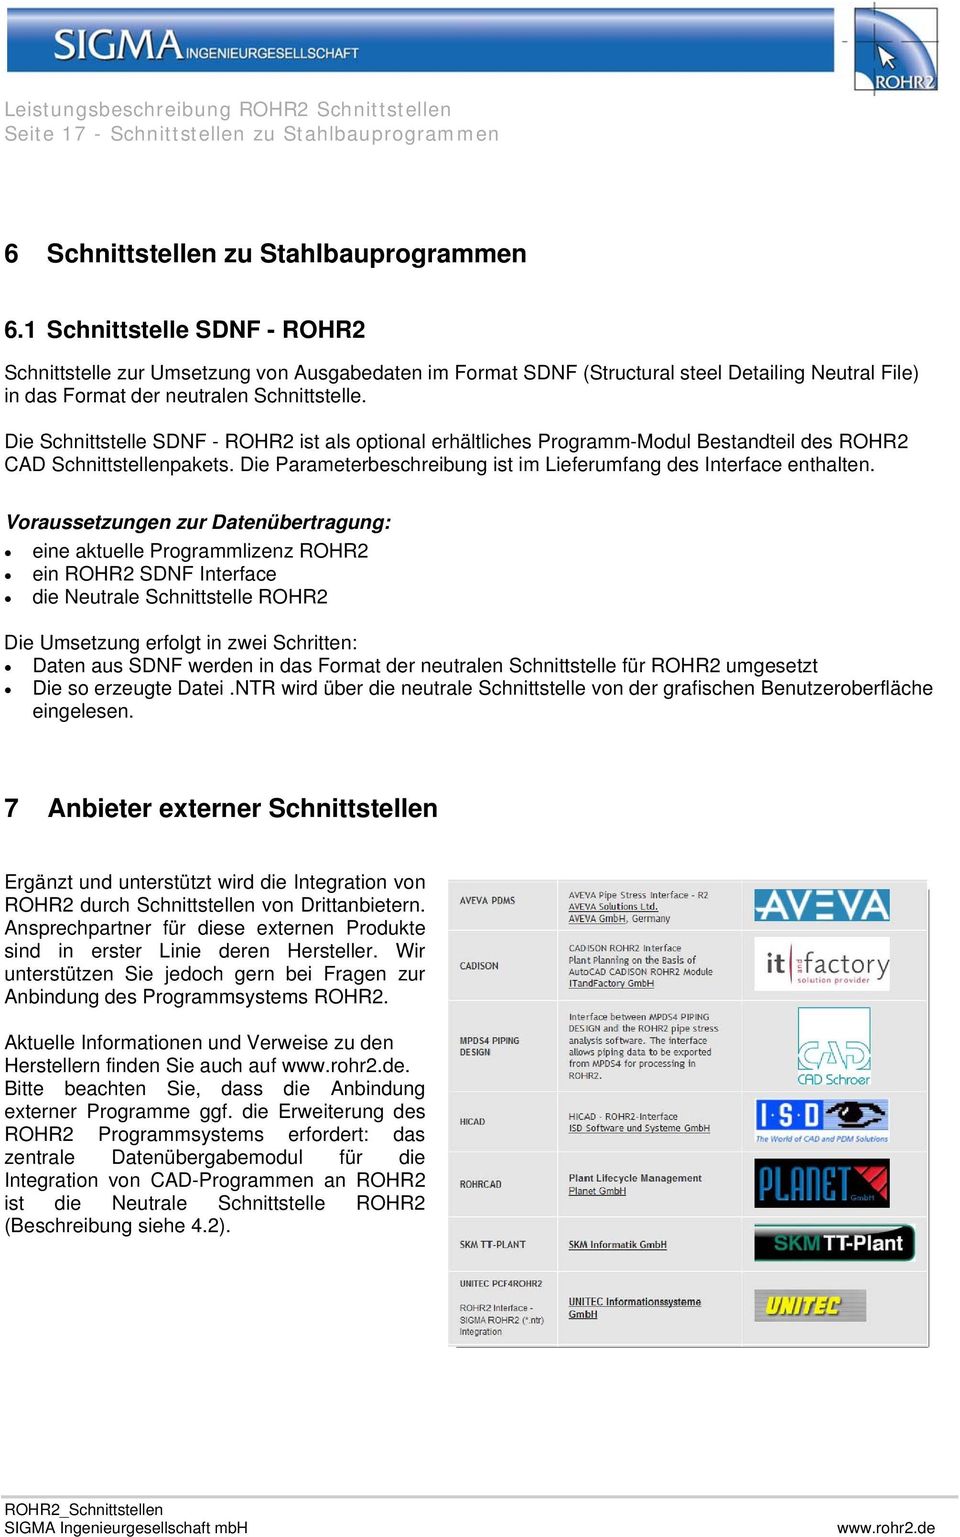 Die Schnittstelle SDNF - ROHR2 ist als optional erhältliches Programm-Modul Bestandteil des ROHR2 CAD Schnittstellenpakets. Die Parameterbeschreibung ist im Lieferumfang des Interface enthalten.